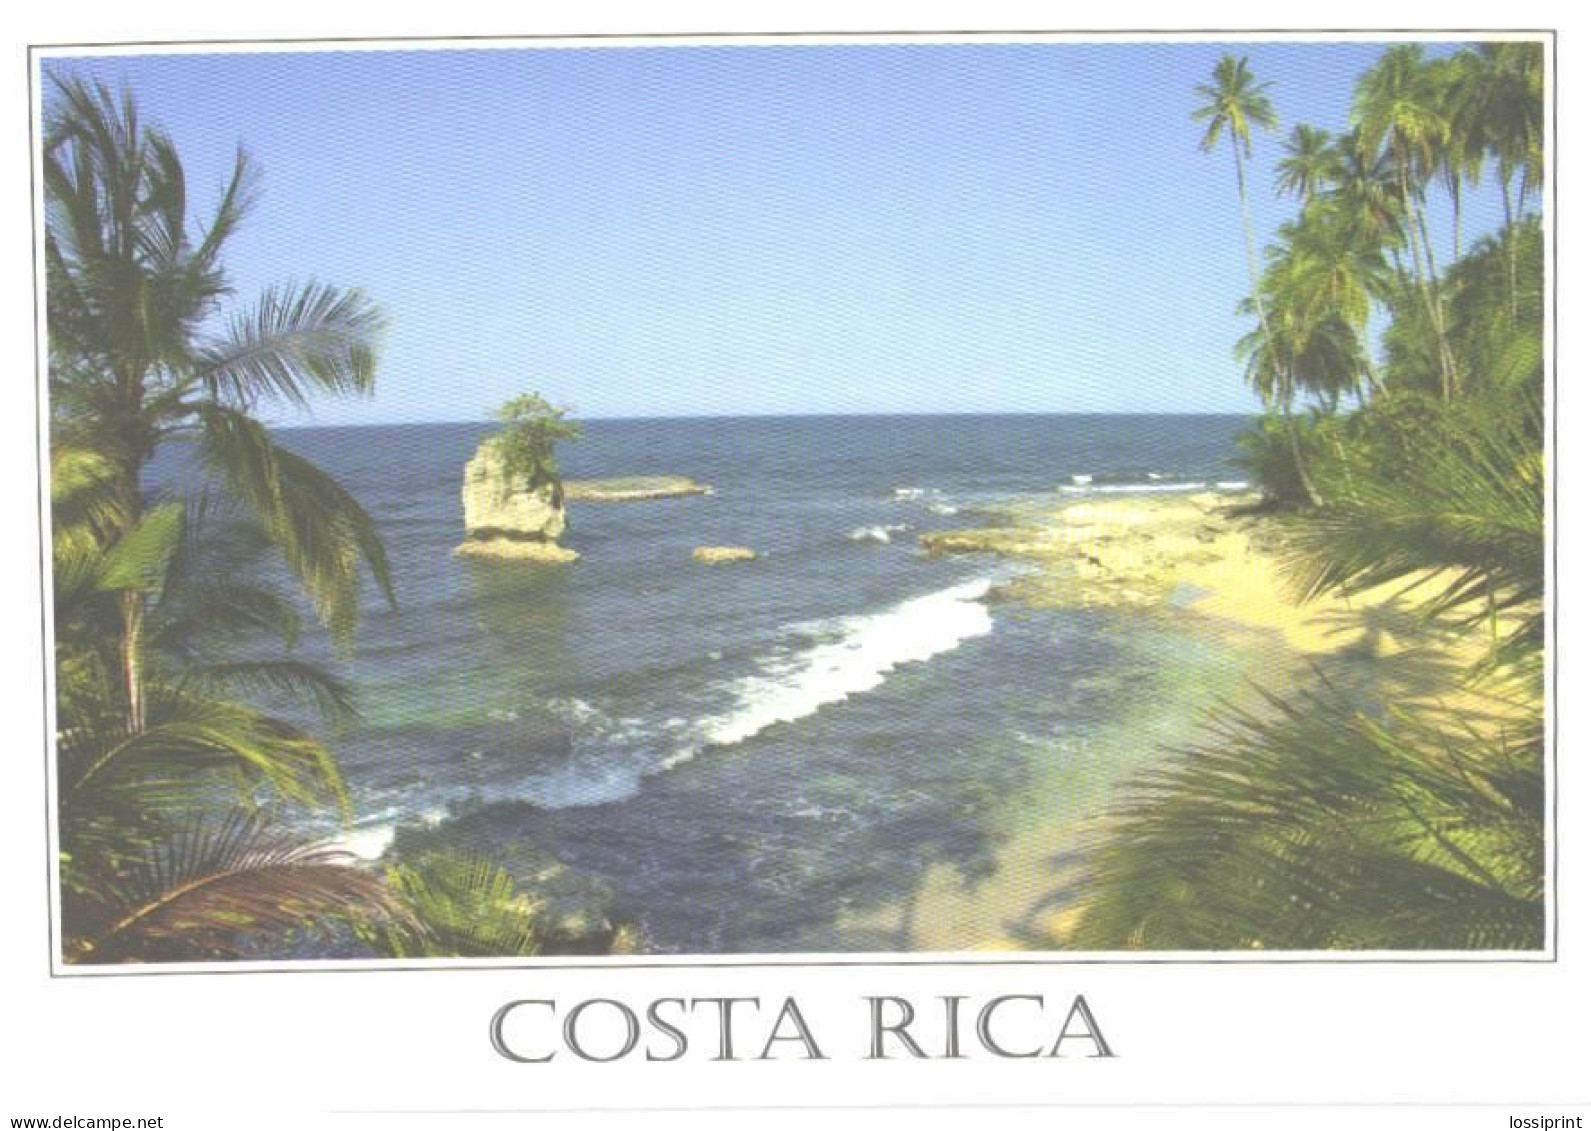 Costa Rica:Manzanillo Point, Gandoca-Manzanillo Wildlife Reserve - Costa Rica